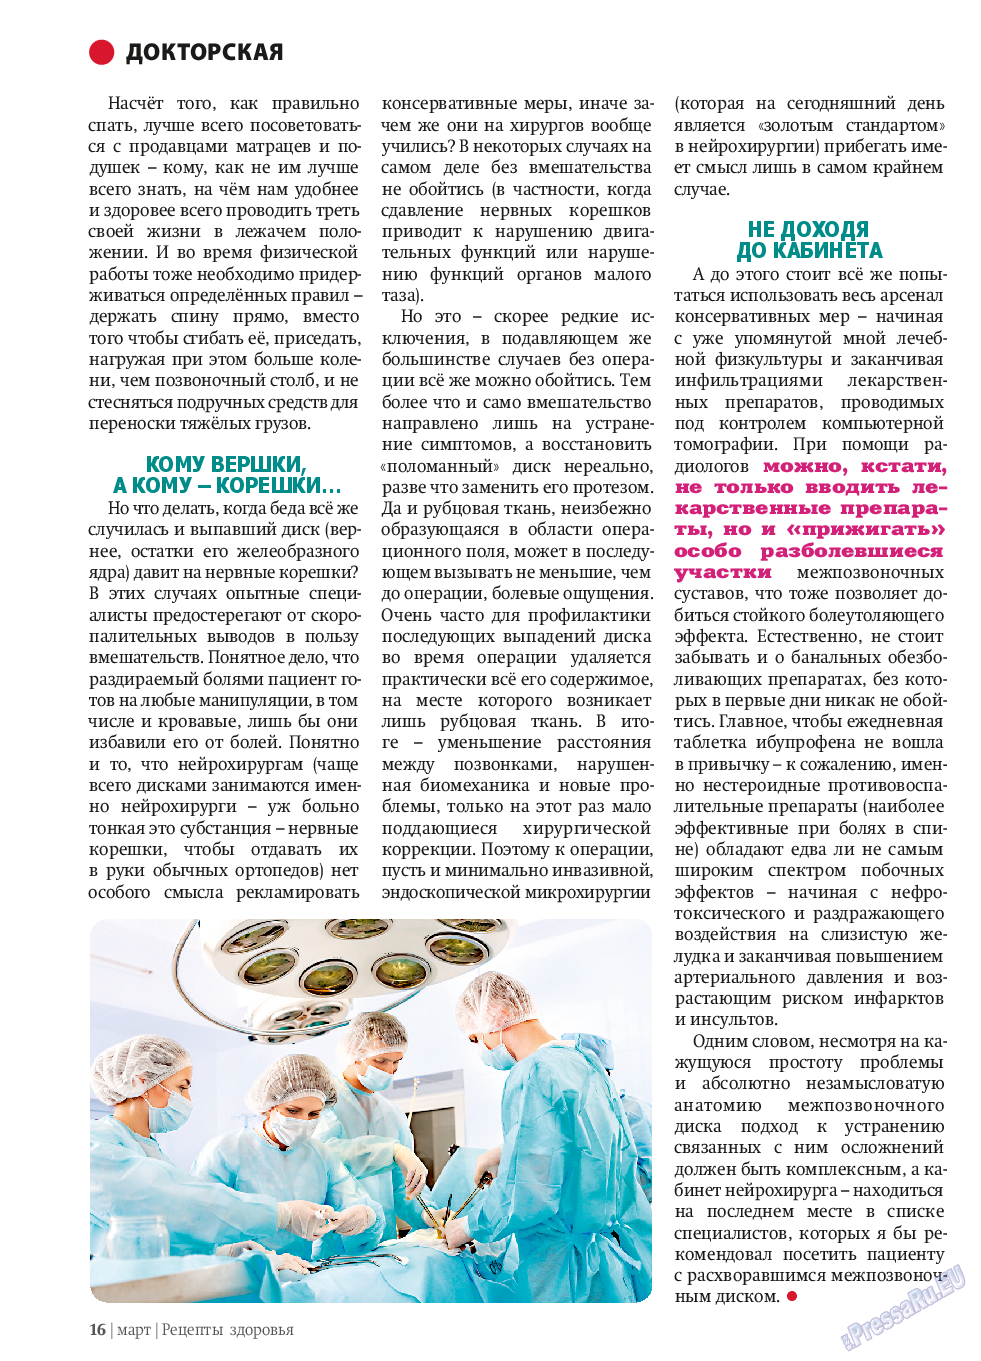 Рецепты здоровья (журнал). 2014 год, номер 58, стр. 16